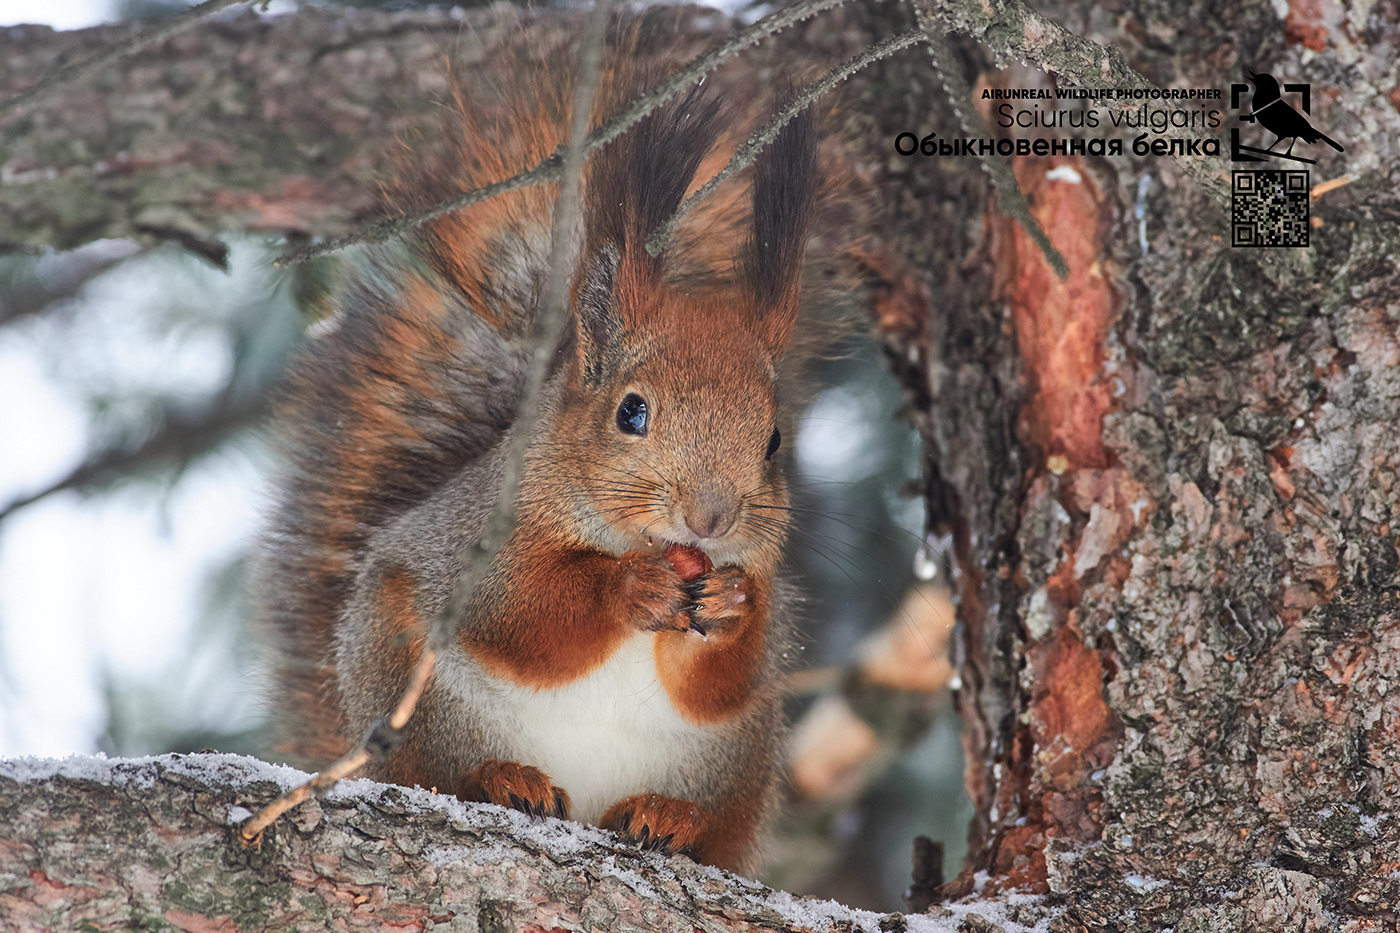 Red Squirrel wildlife mammals volgograd Russia Sciurus vulgaris